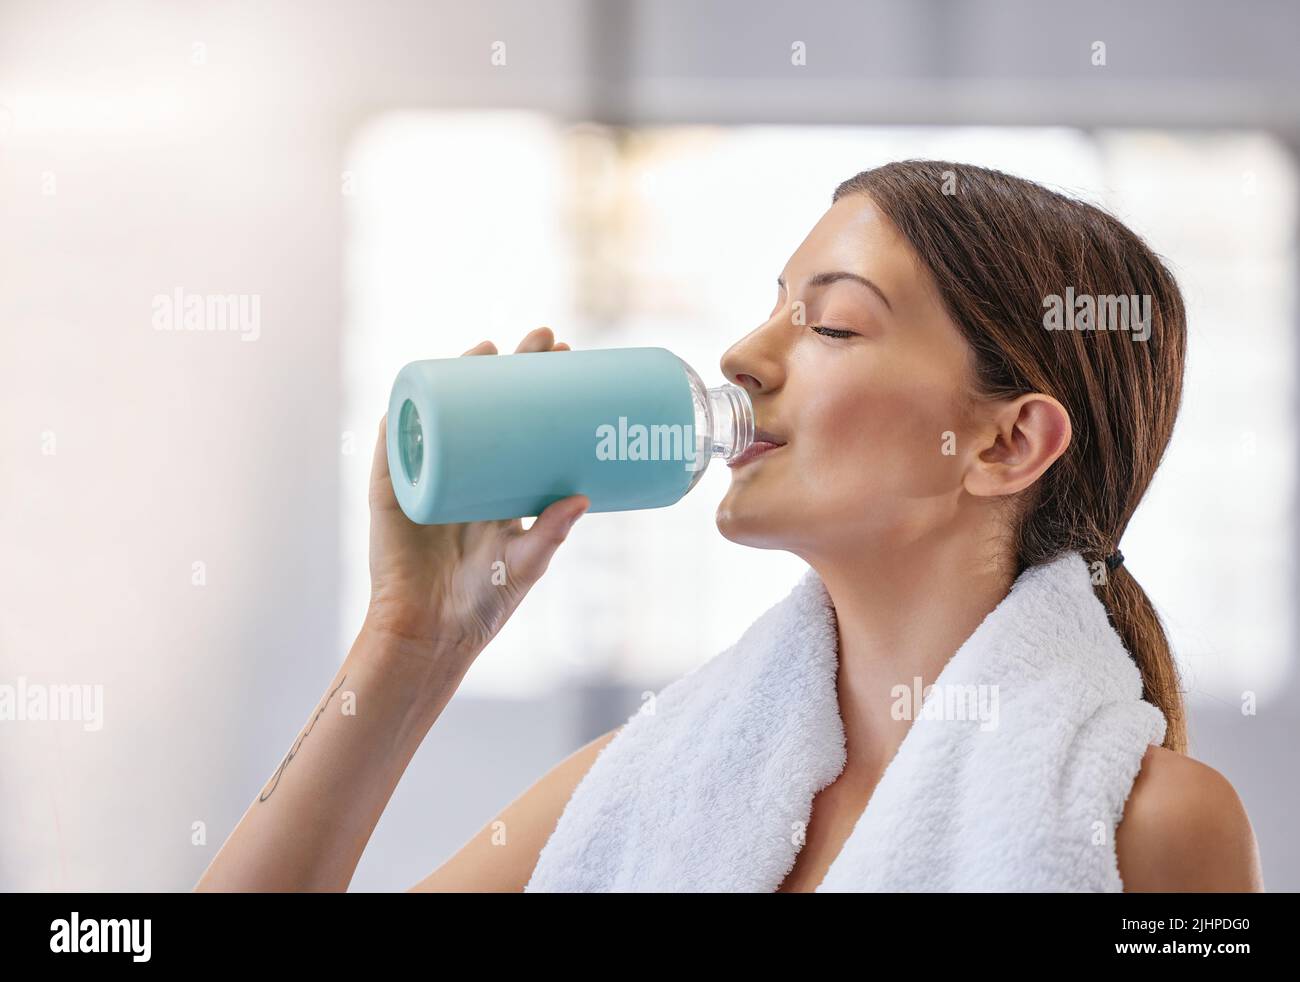 Eine junge kaukasische Frau, die eine Ruhepause einnahm, um Wasser aus der Flasche zu trinken, während sie im Fitnessstudio trainiere. Weibliche Sportlerin, die Durst und Abkühlung stillen Stockfoto